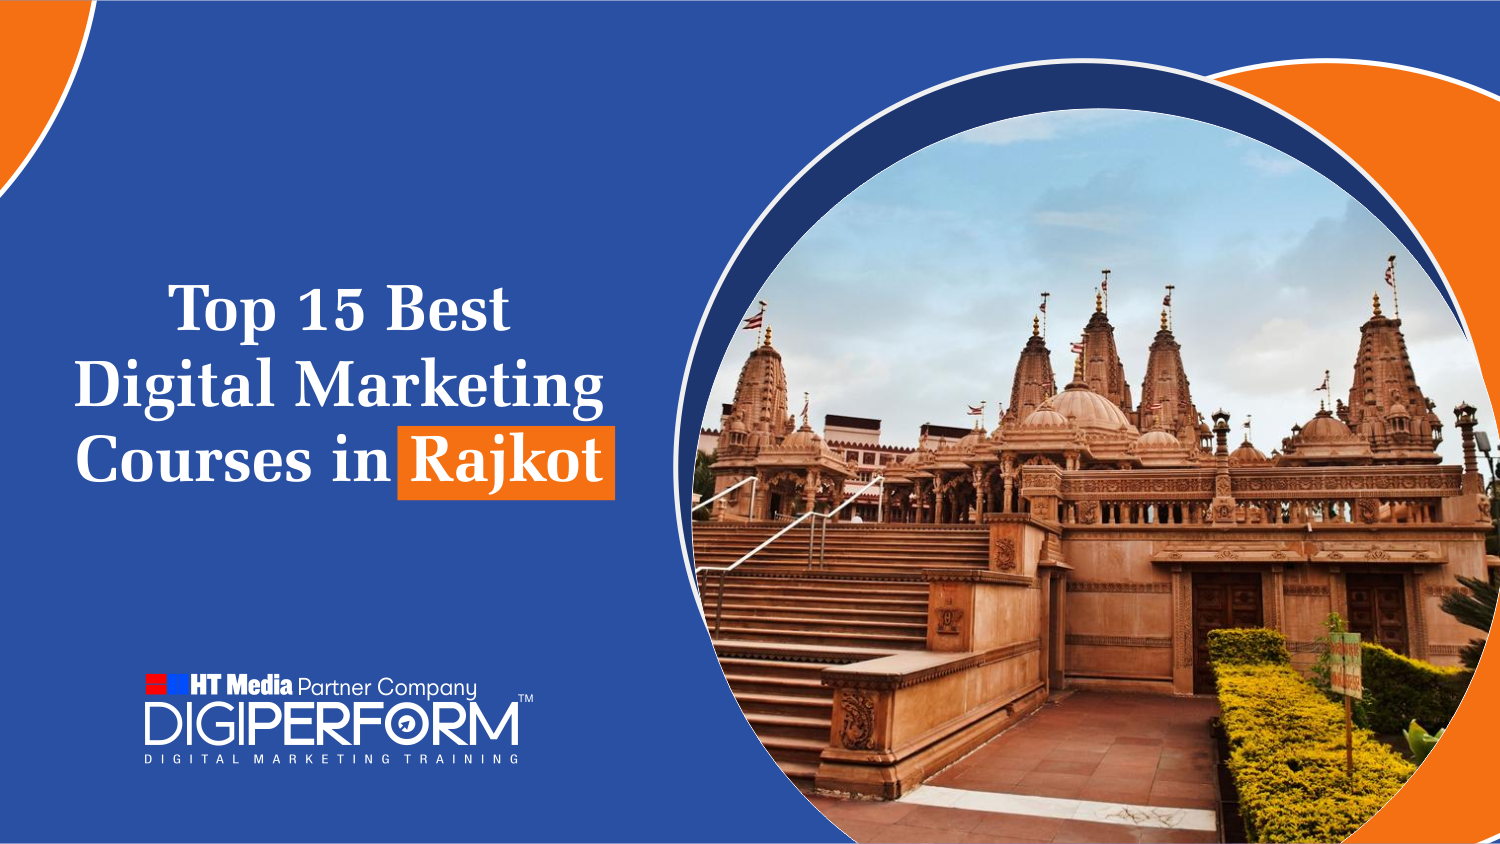 Top 15 Best Digital Marketing Courses in Rajkot